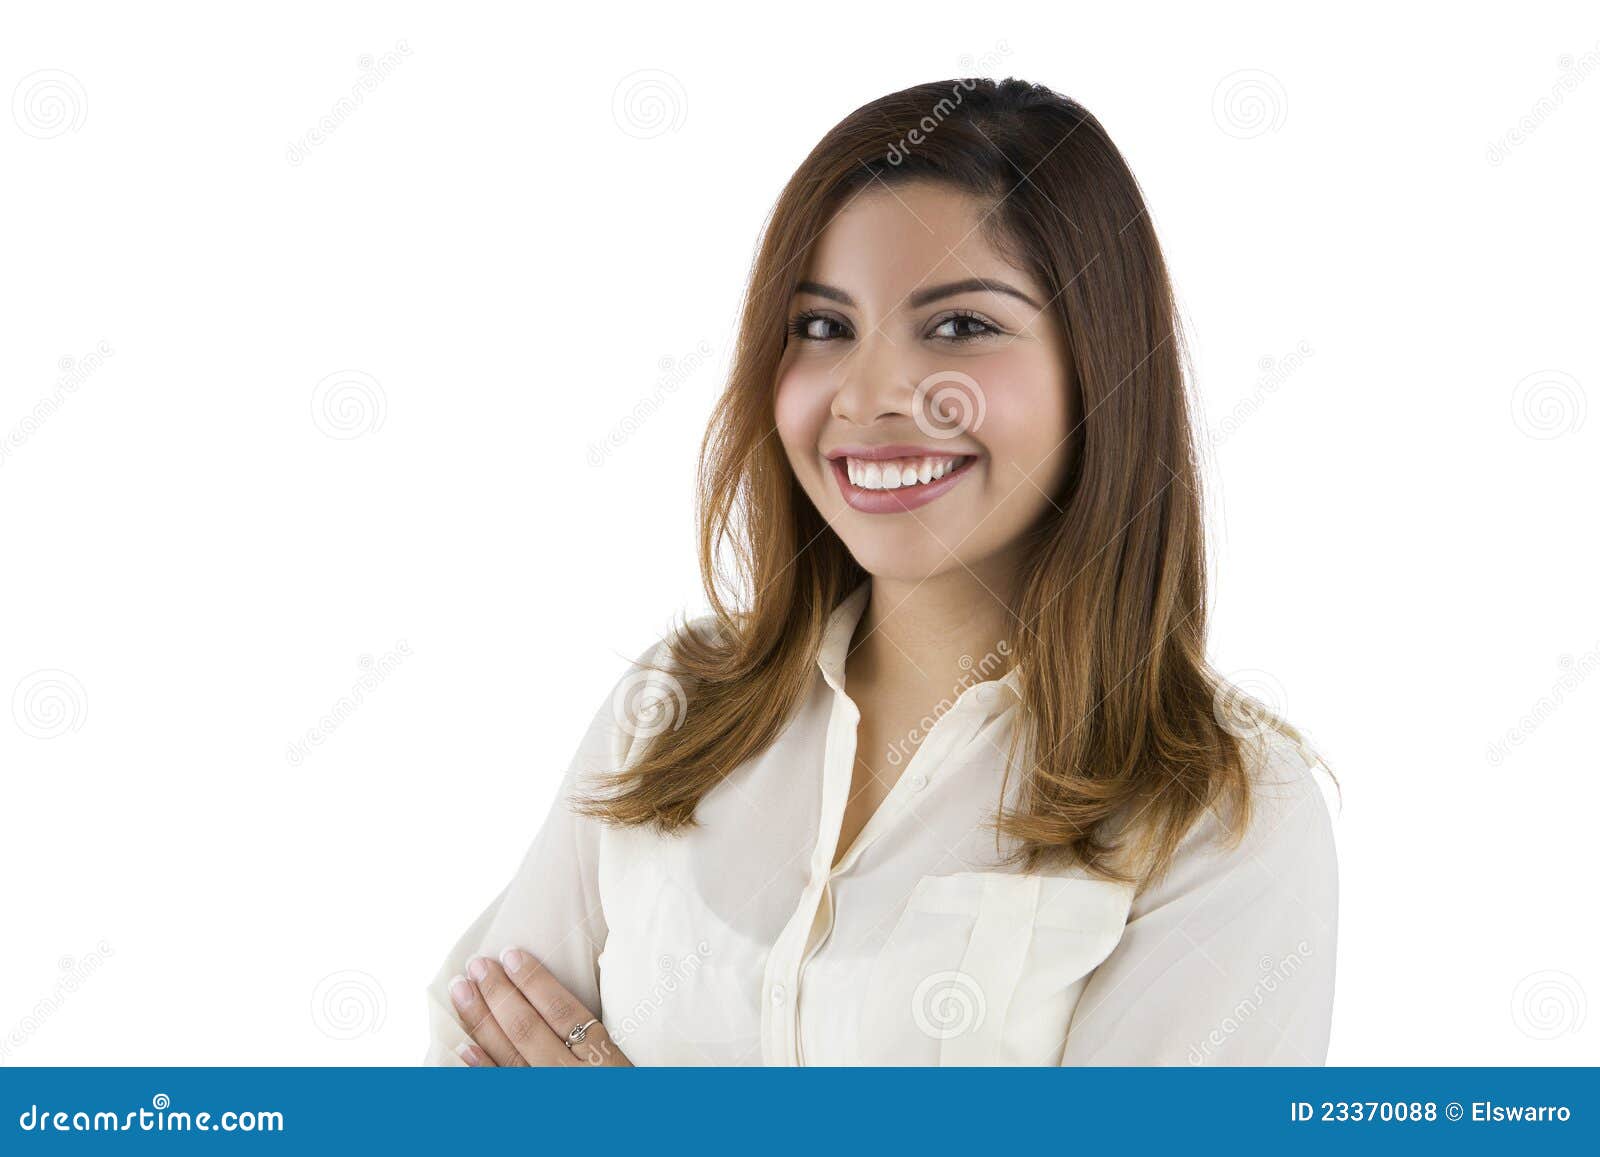 smiling latino woman